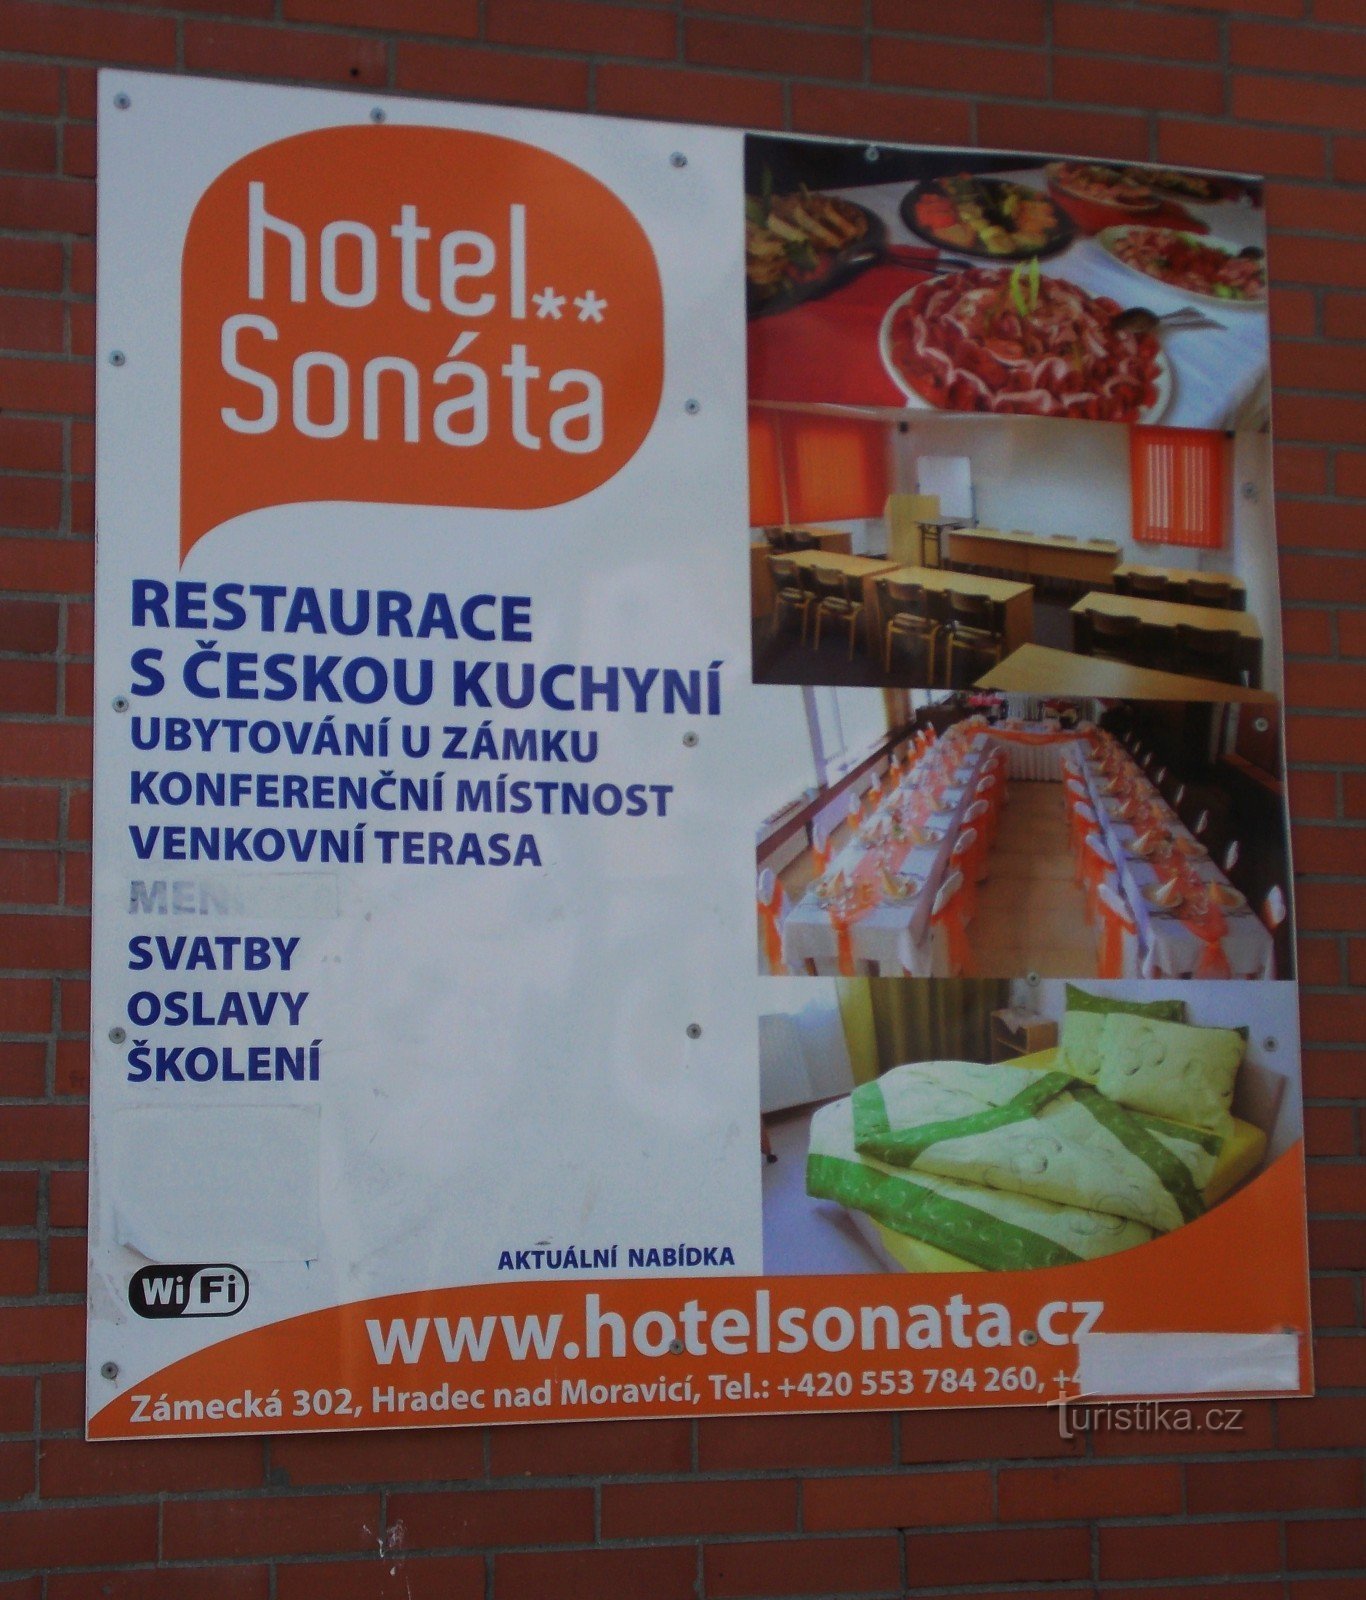 Hotel Sonáta in Hradec nad Moravicí